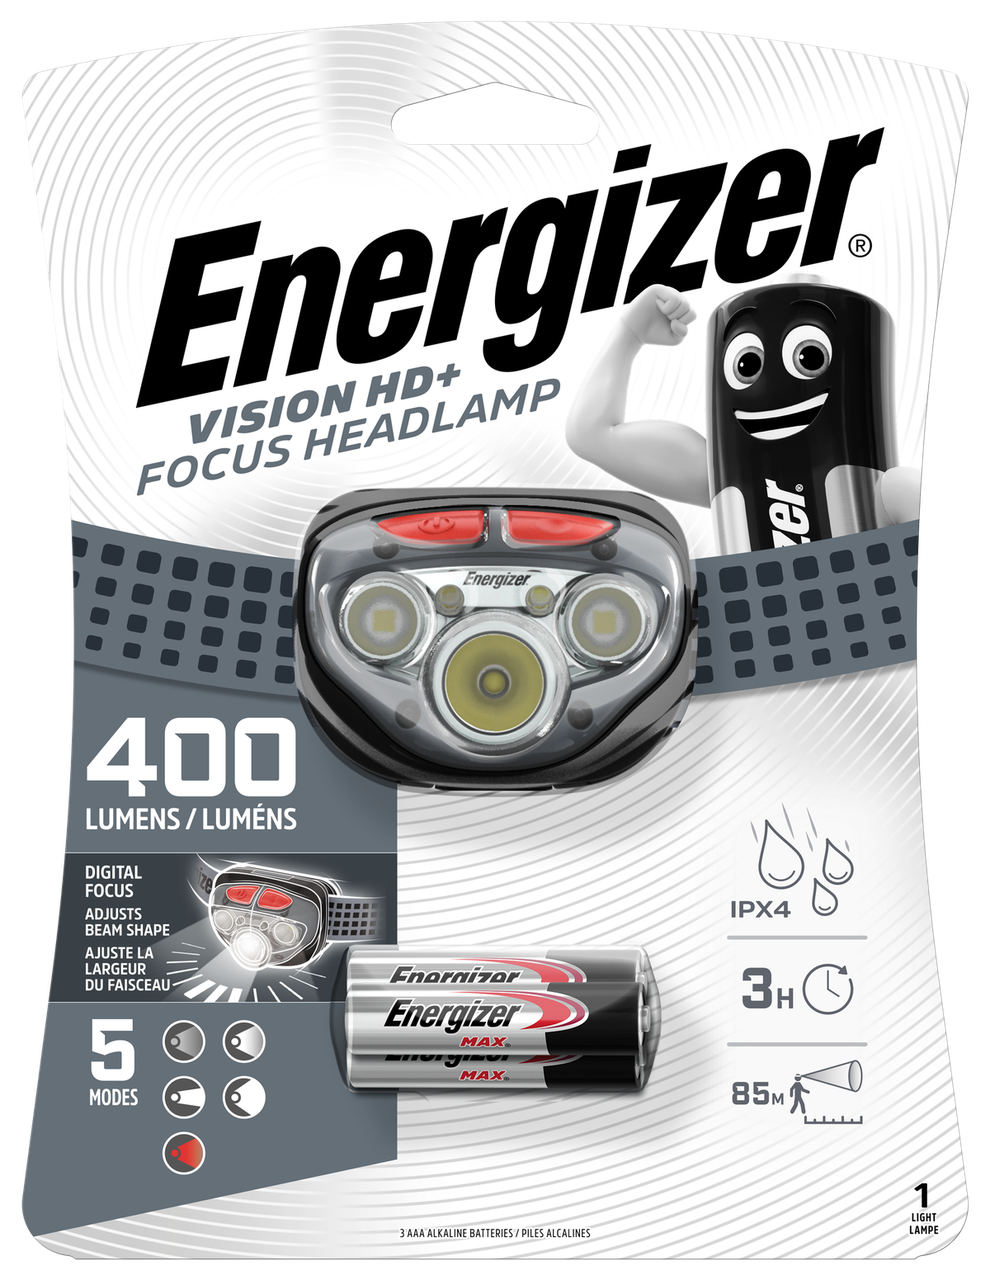 Ліхтар ENERGIZER vision hd+focus 400 lumens